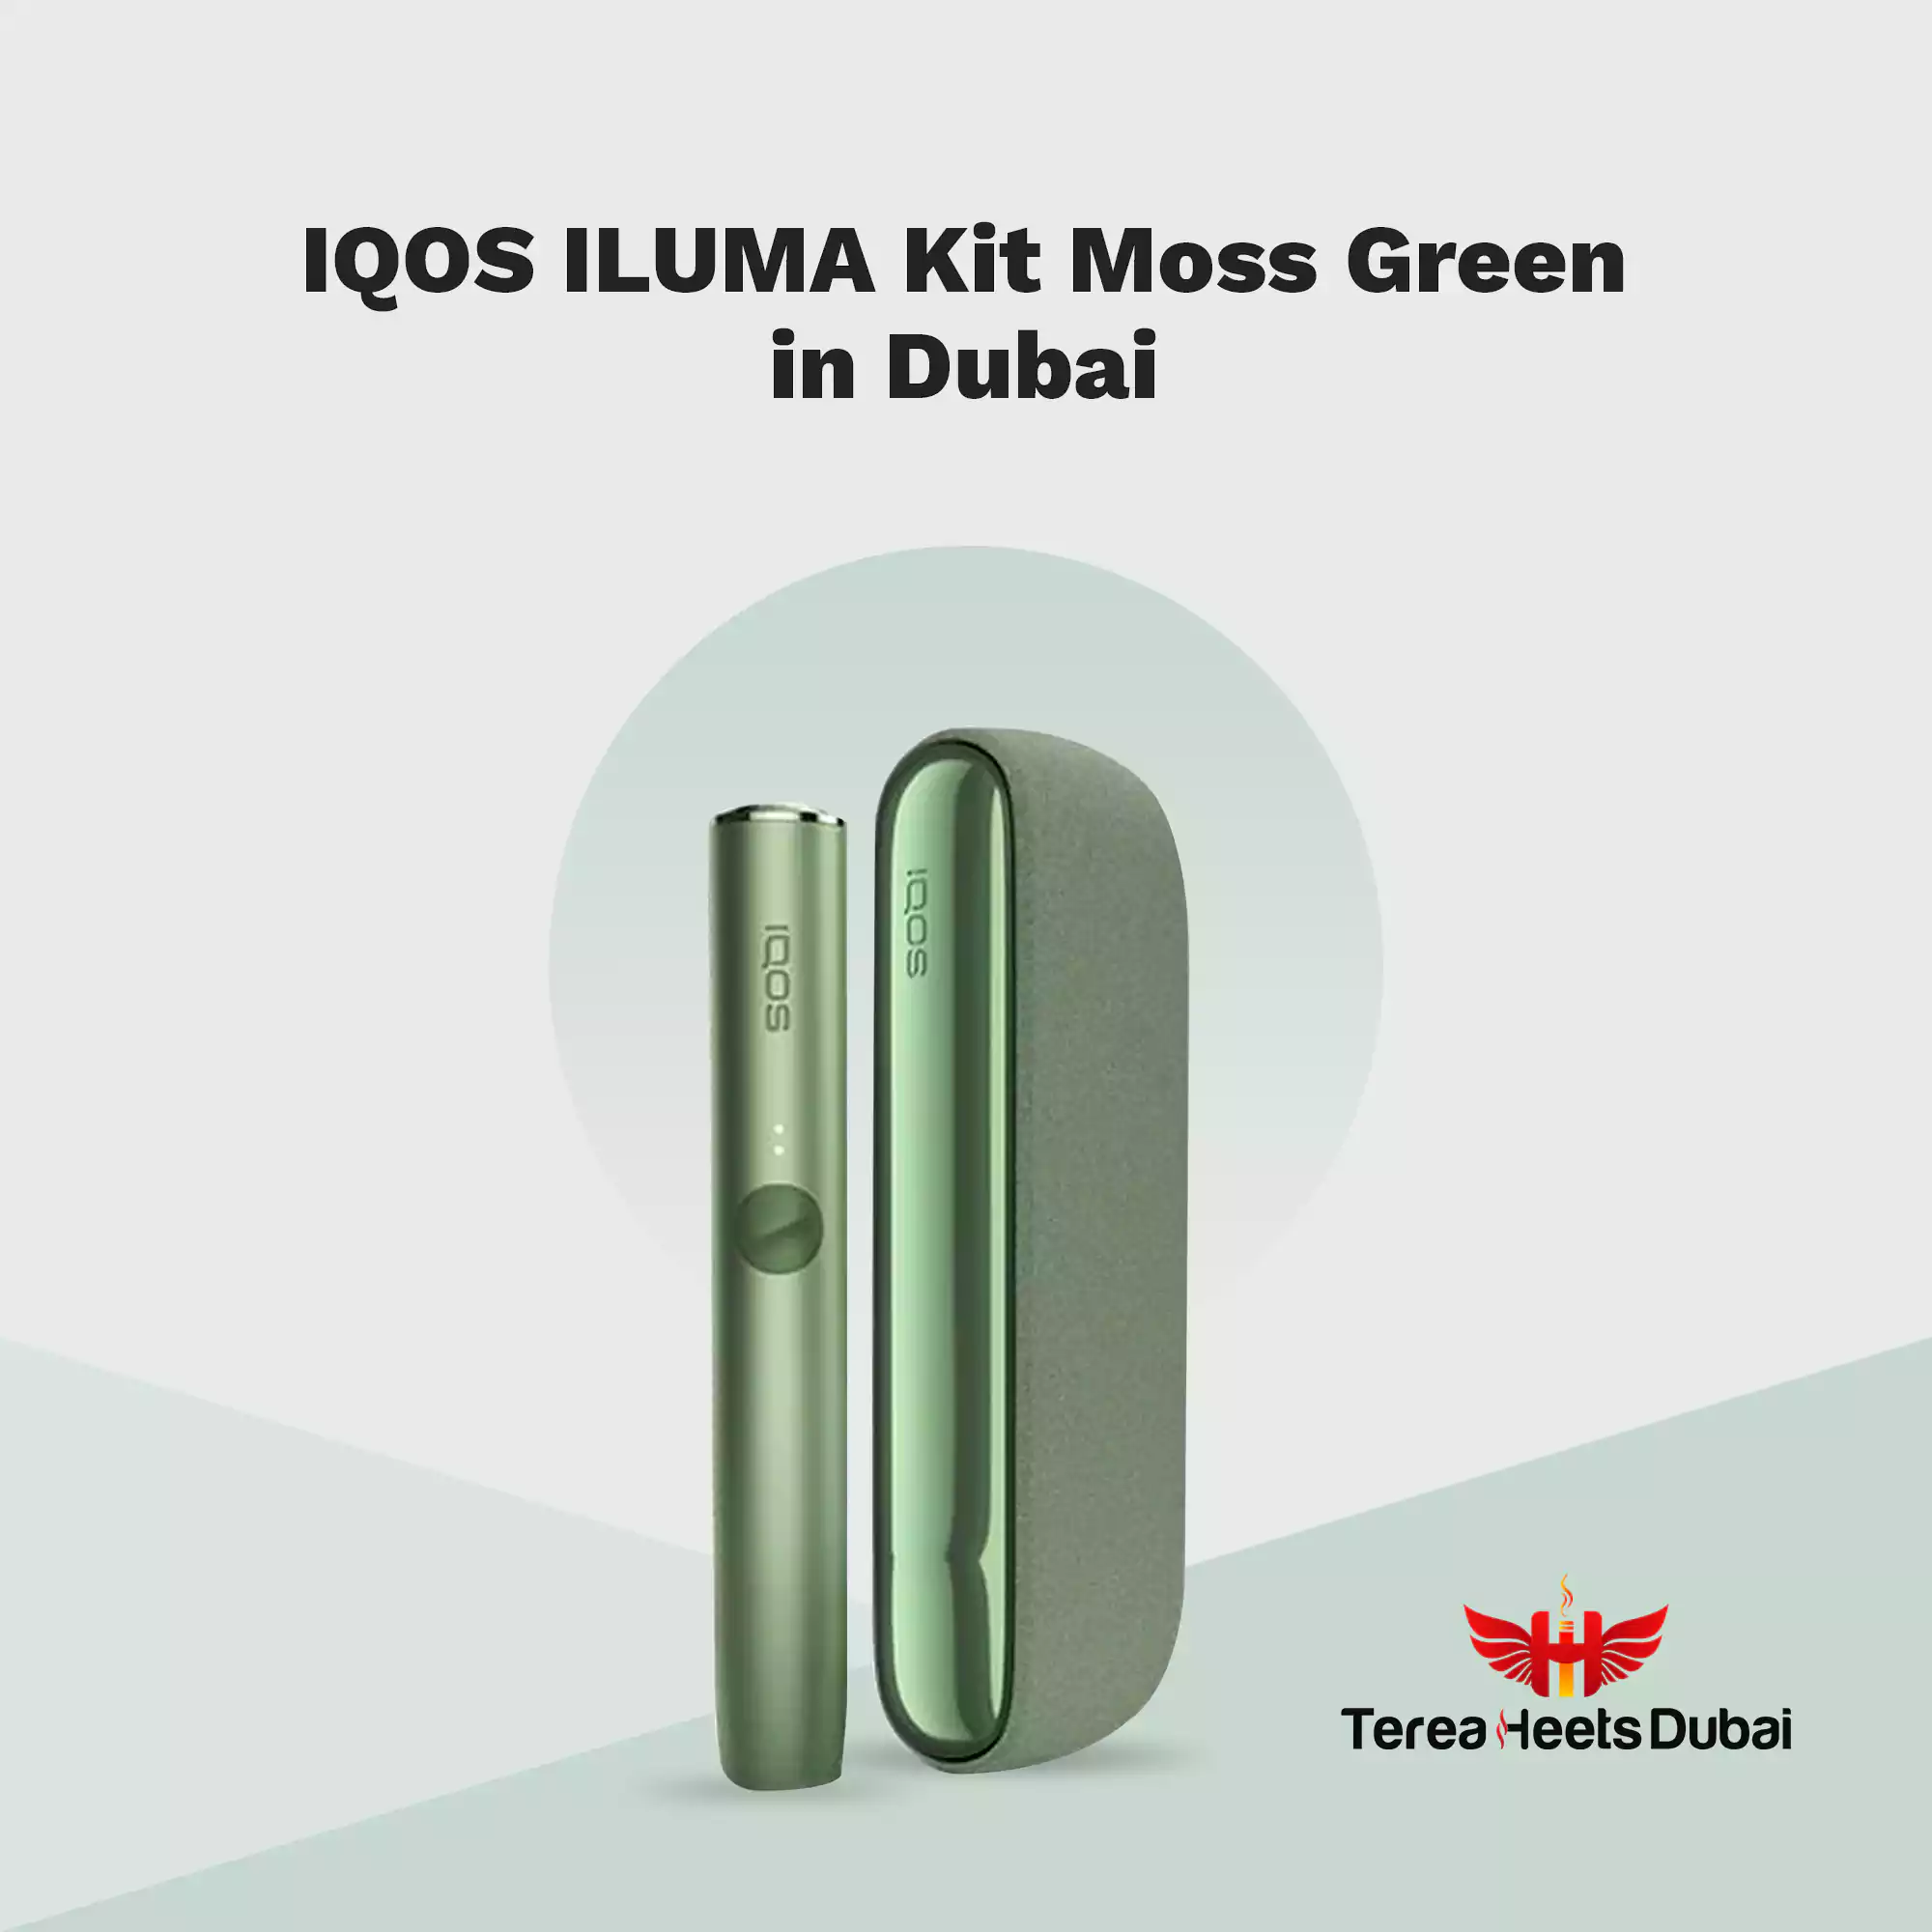 IQOS Iluma Moss Green - Lambda CC Worldwide